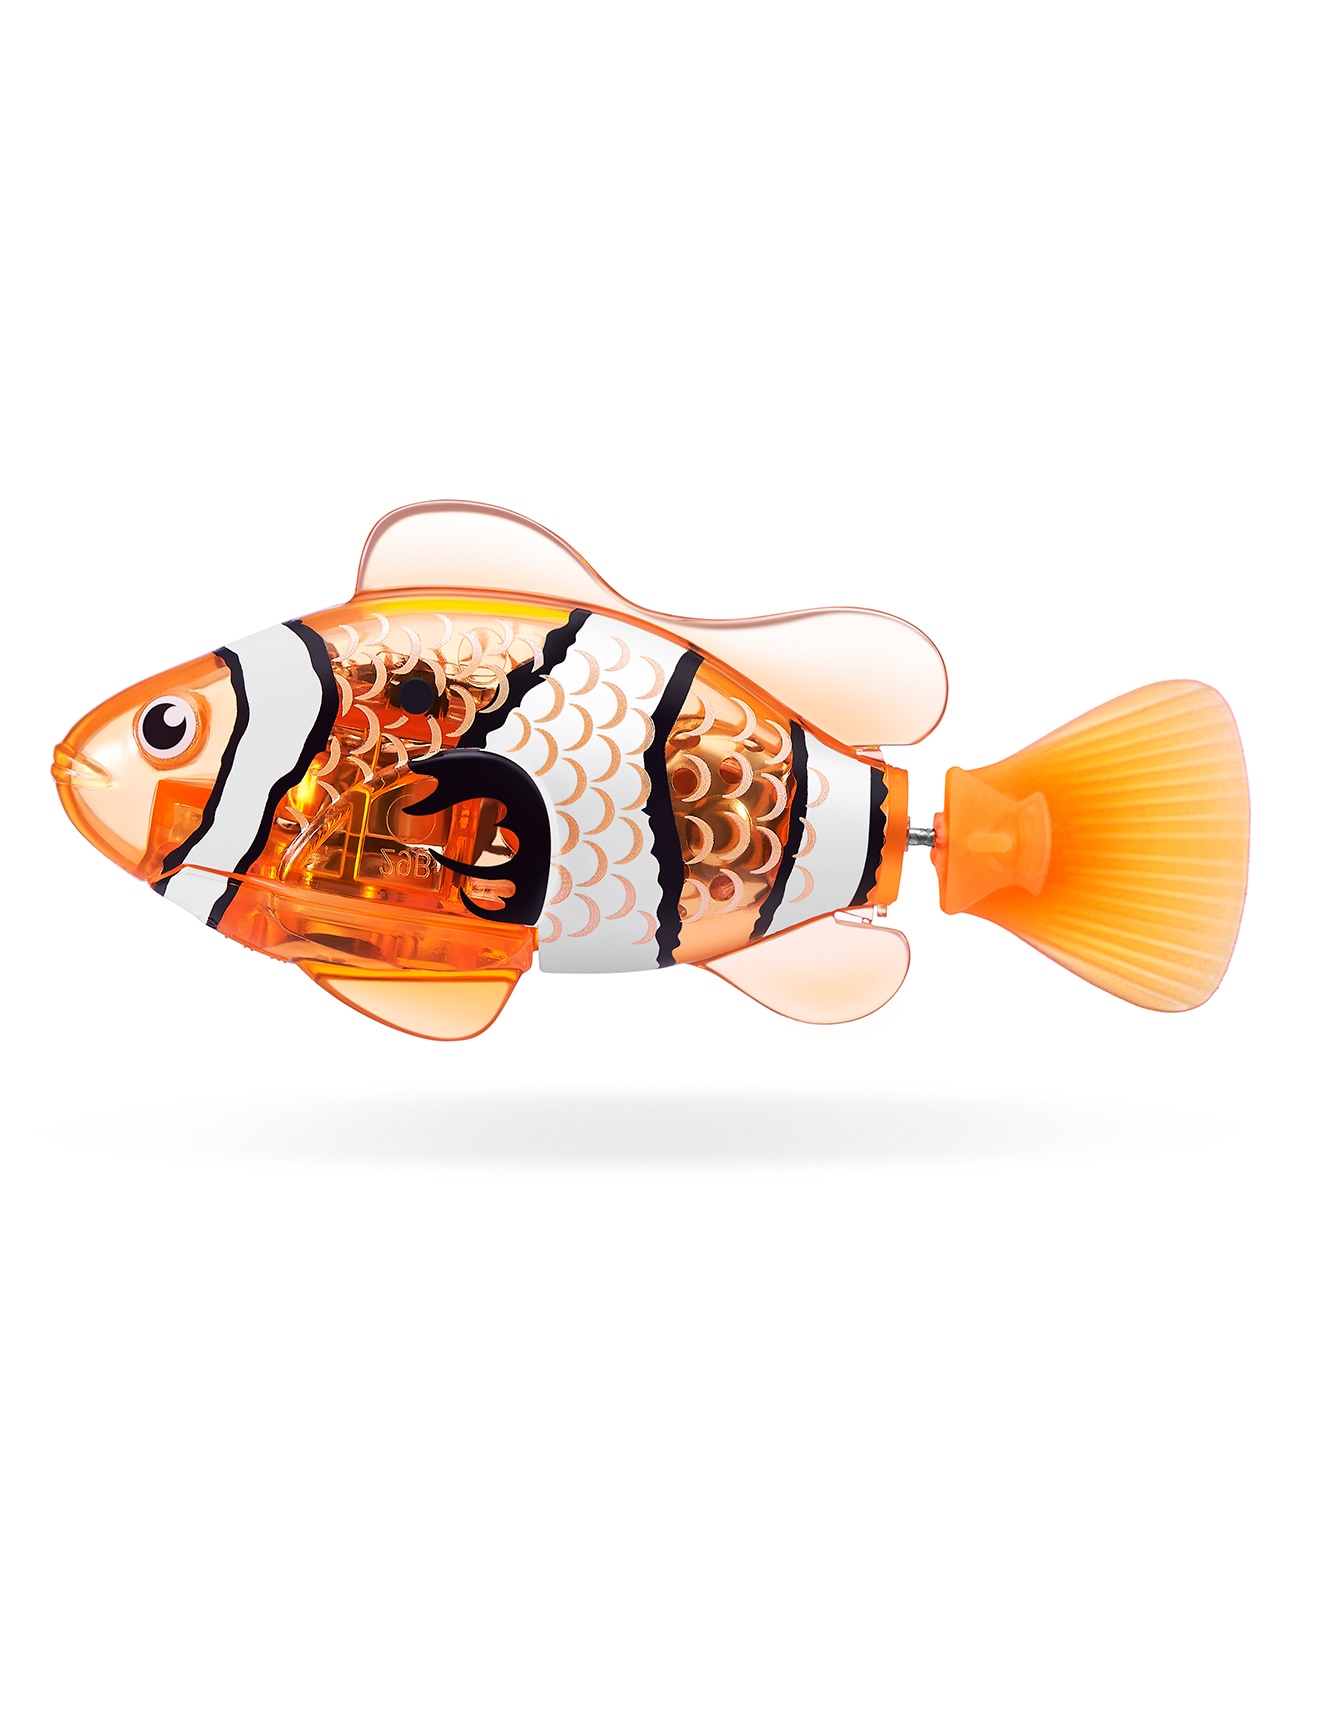 Peces Robot Zuru Alive Fish Series 2 Assorted - Bebemundo